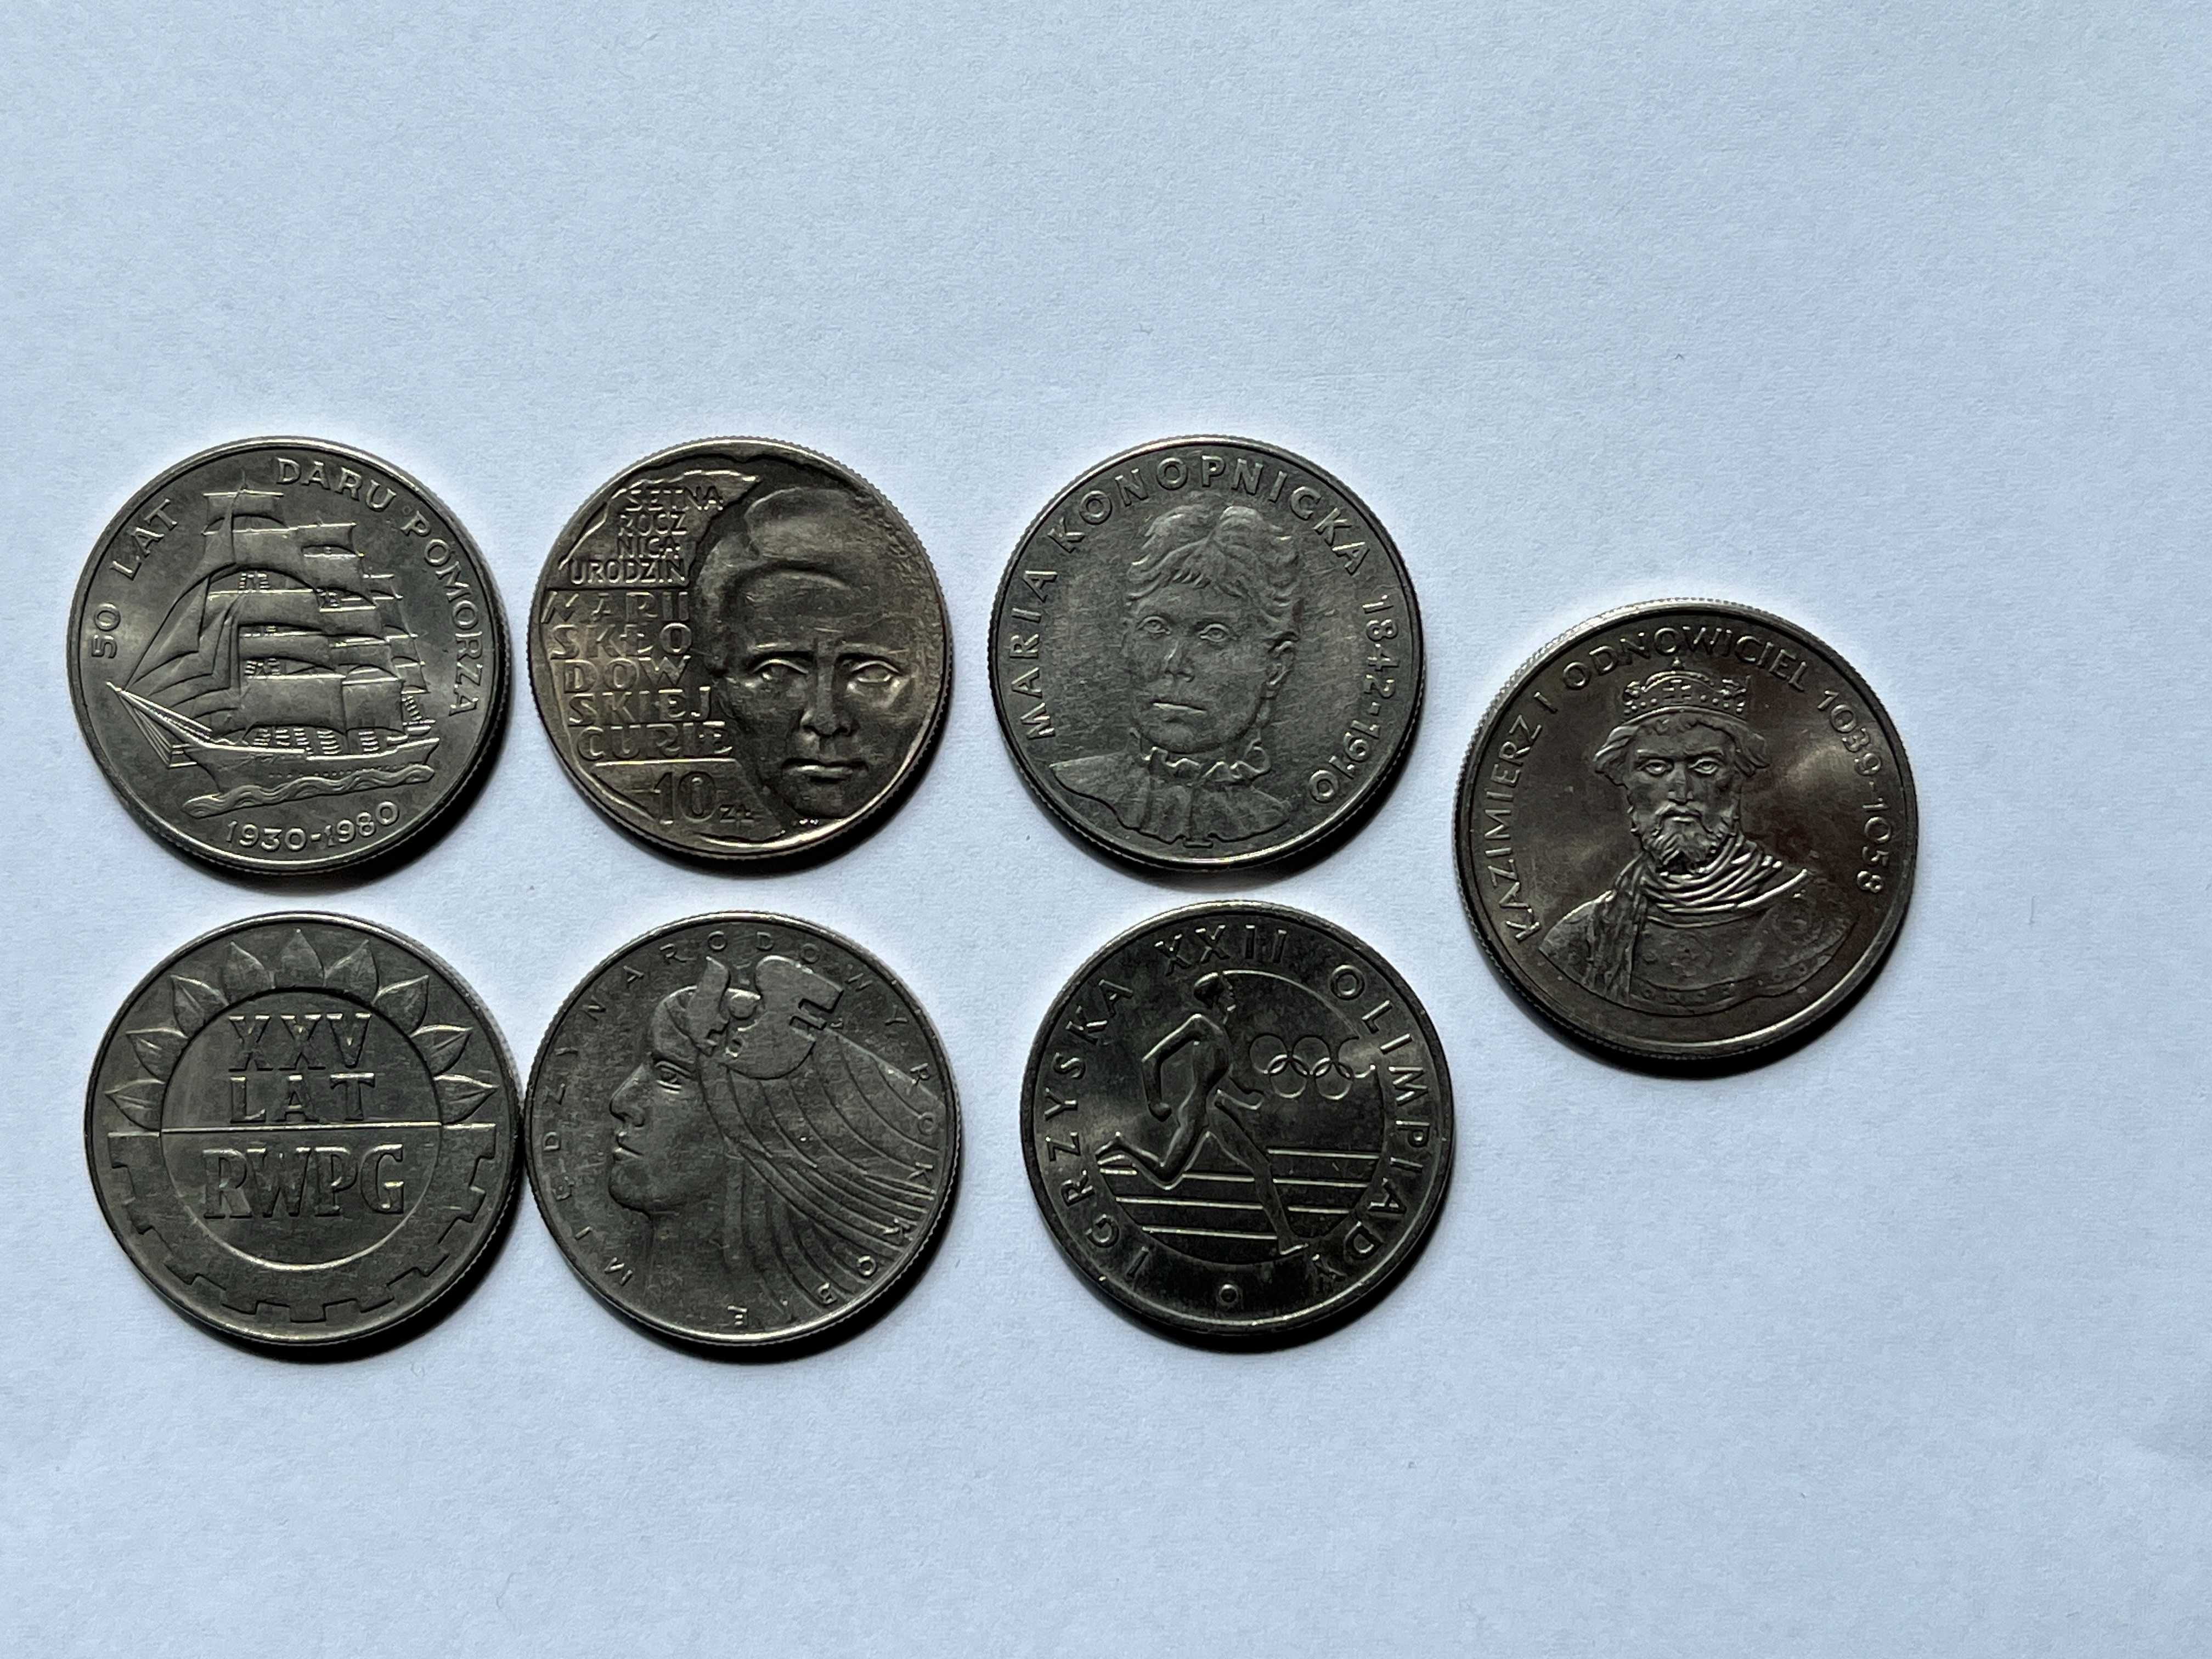 zestaw monet z czasów PRL 10zł, 20zł i 50 zł  - 7 sztuk